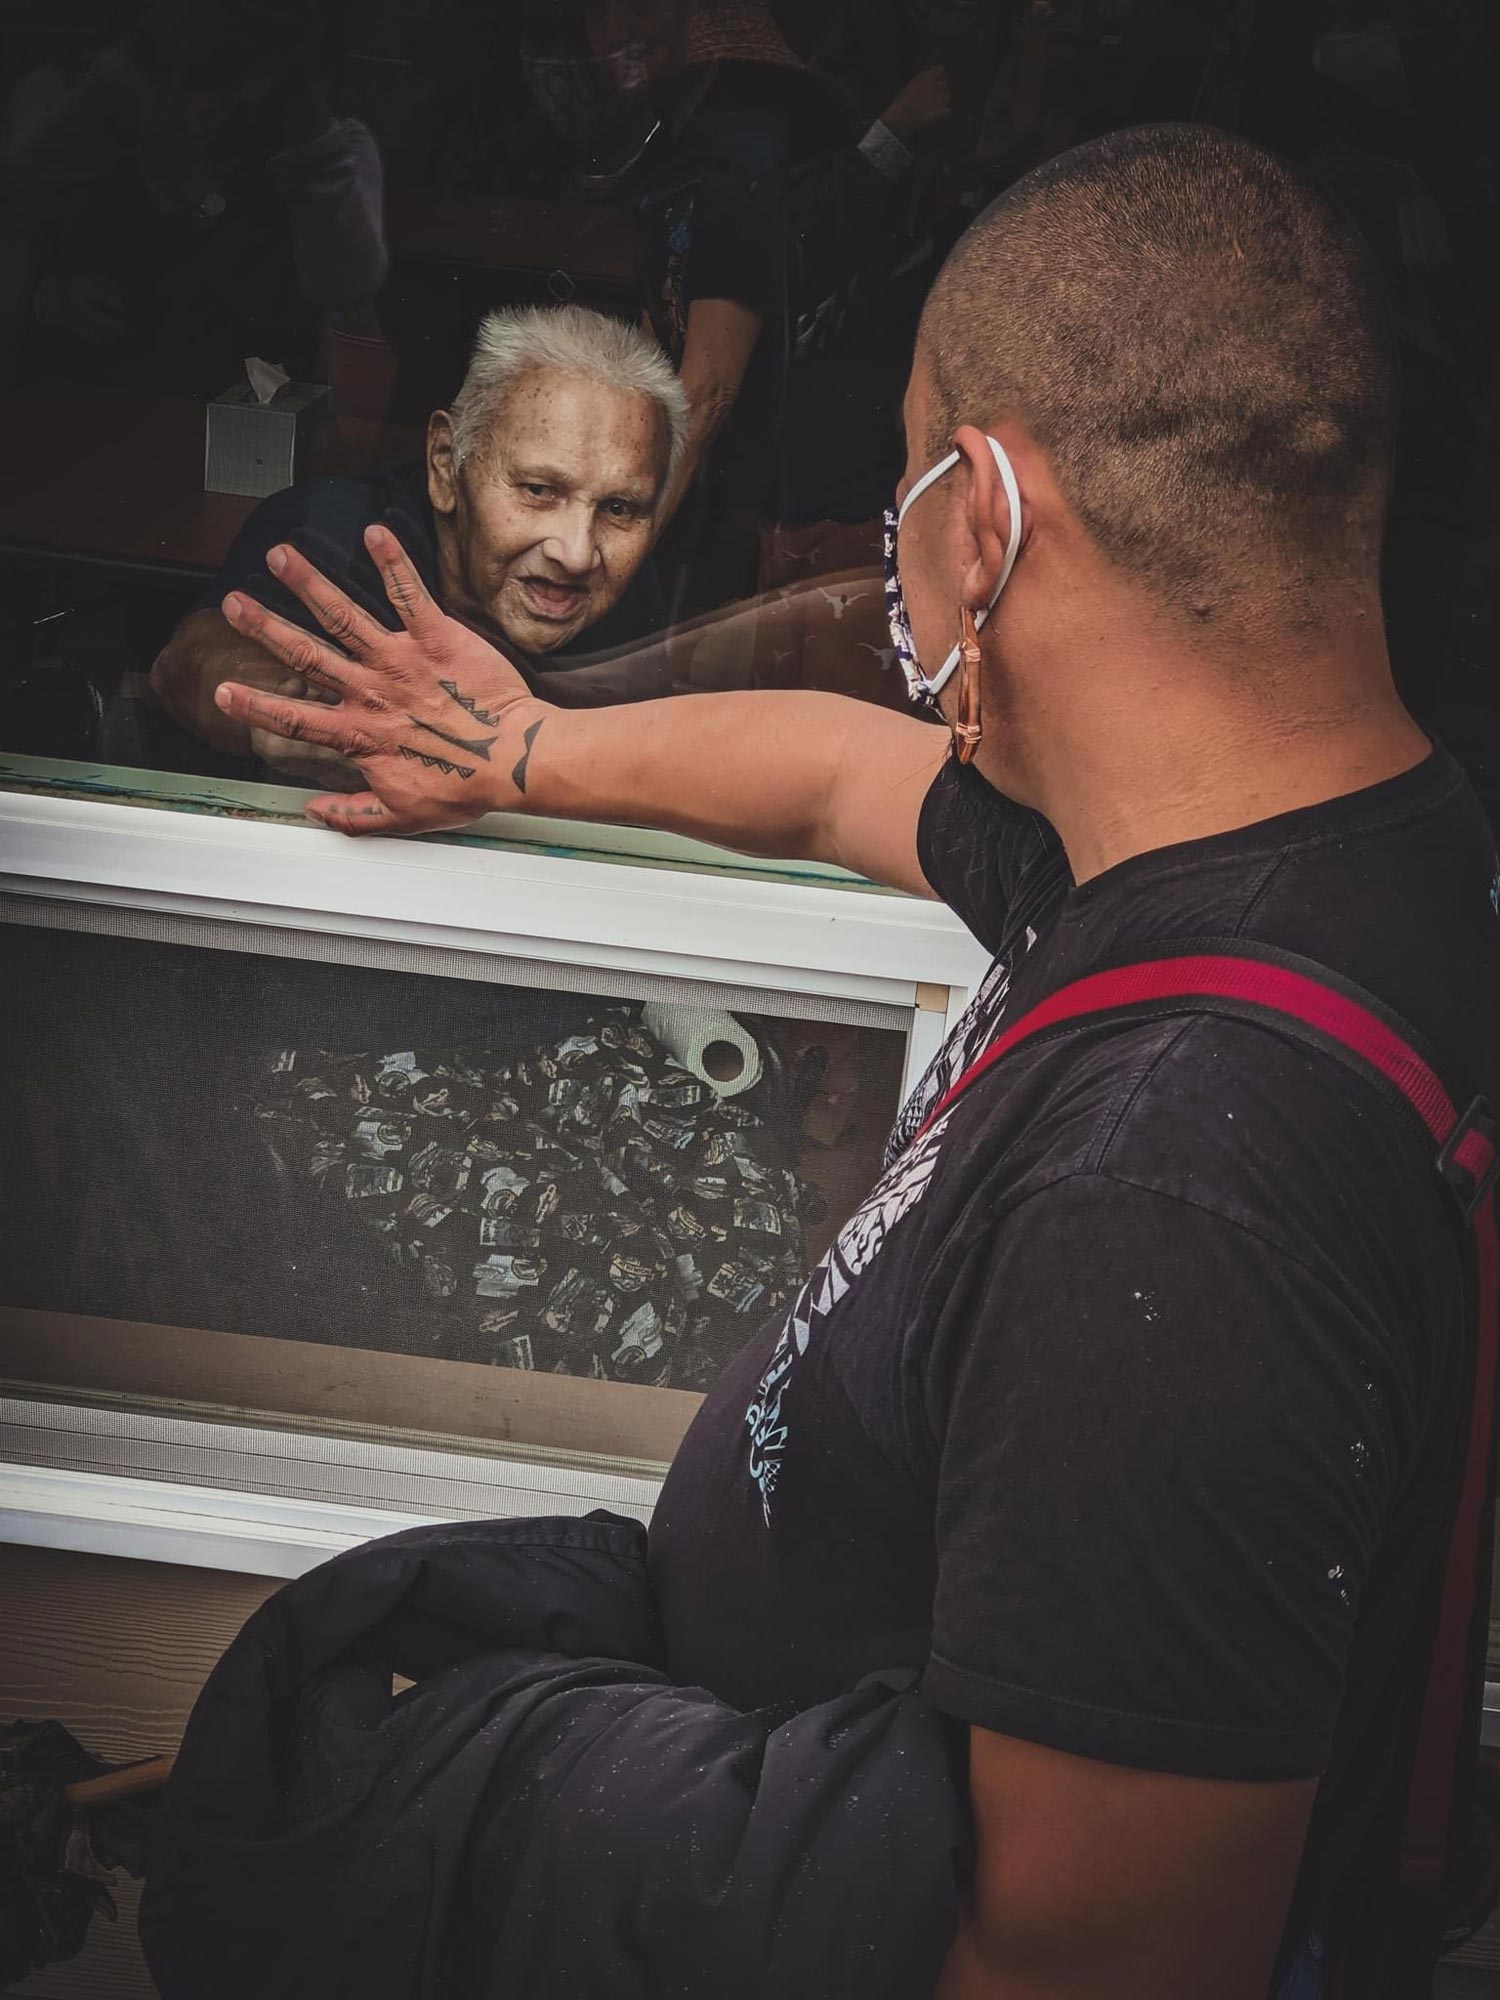 two men meet hands through a window